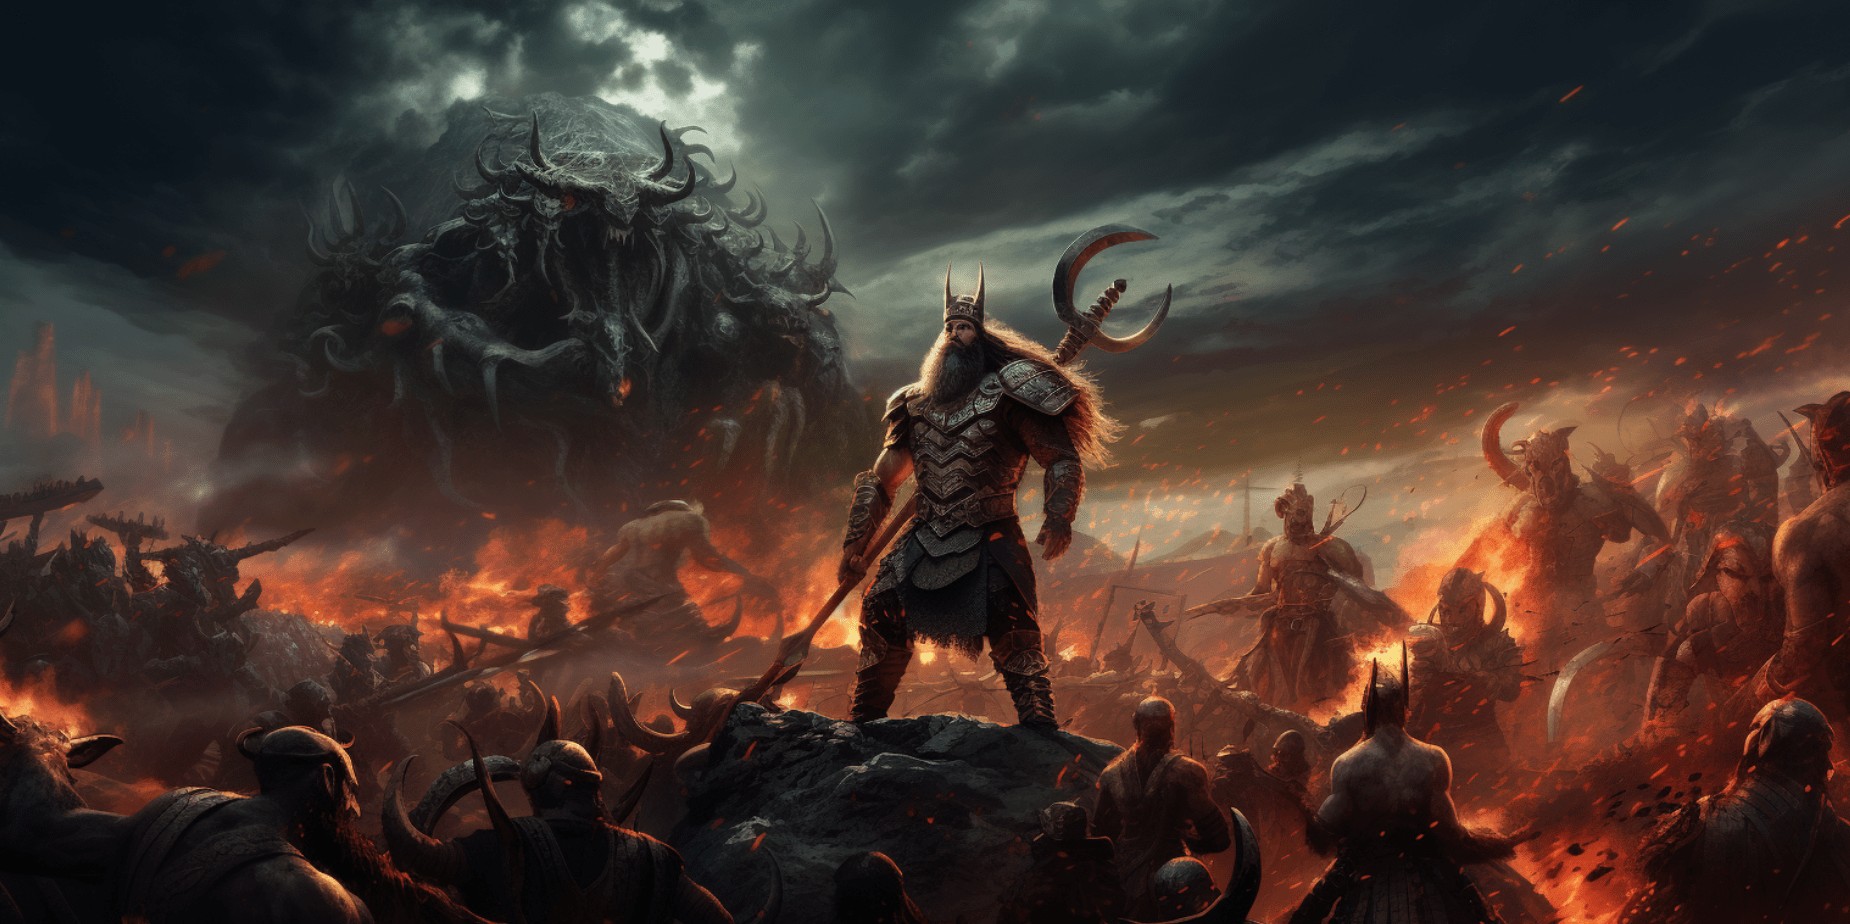 Magni & Modi (Thor's Sons): Norse Gods Who Survive Ragnarok